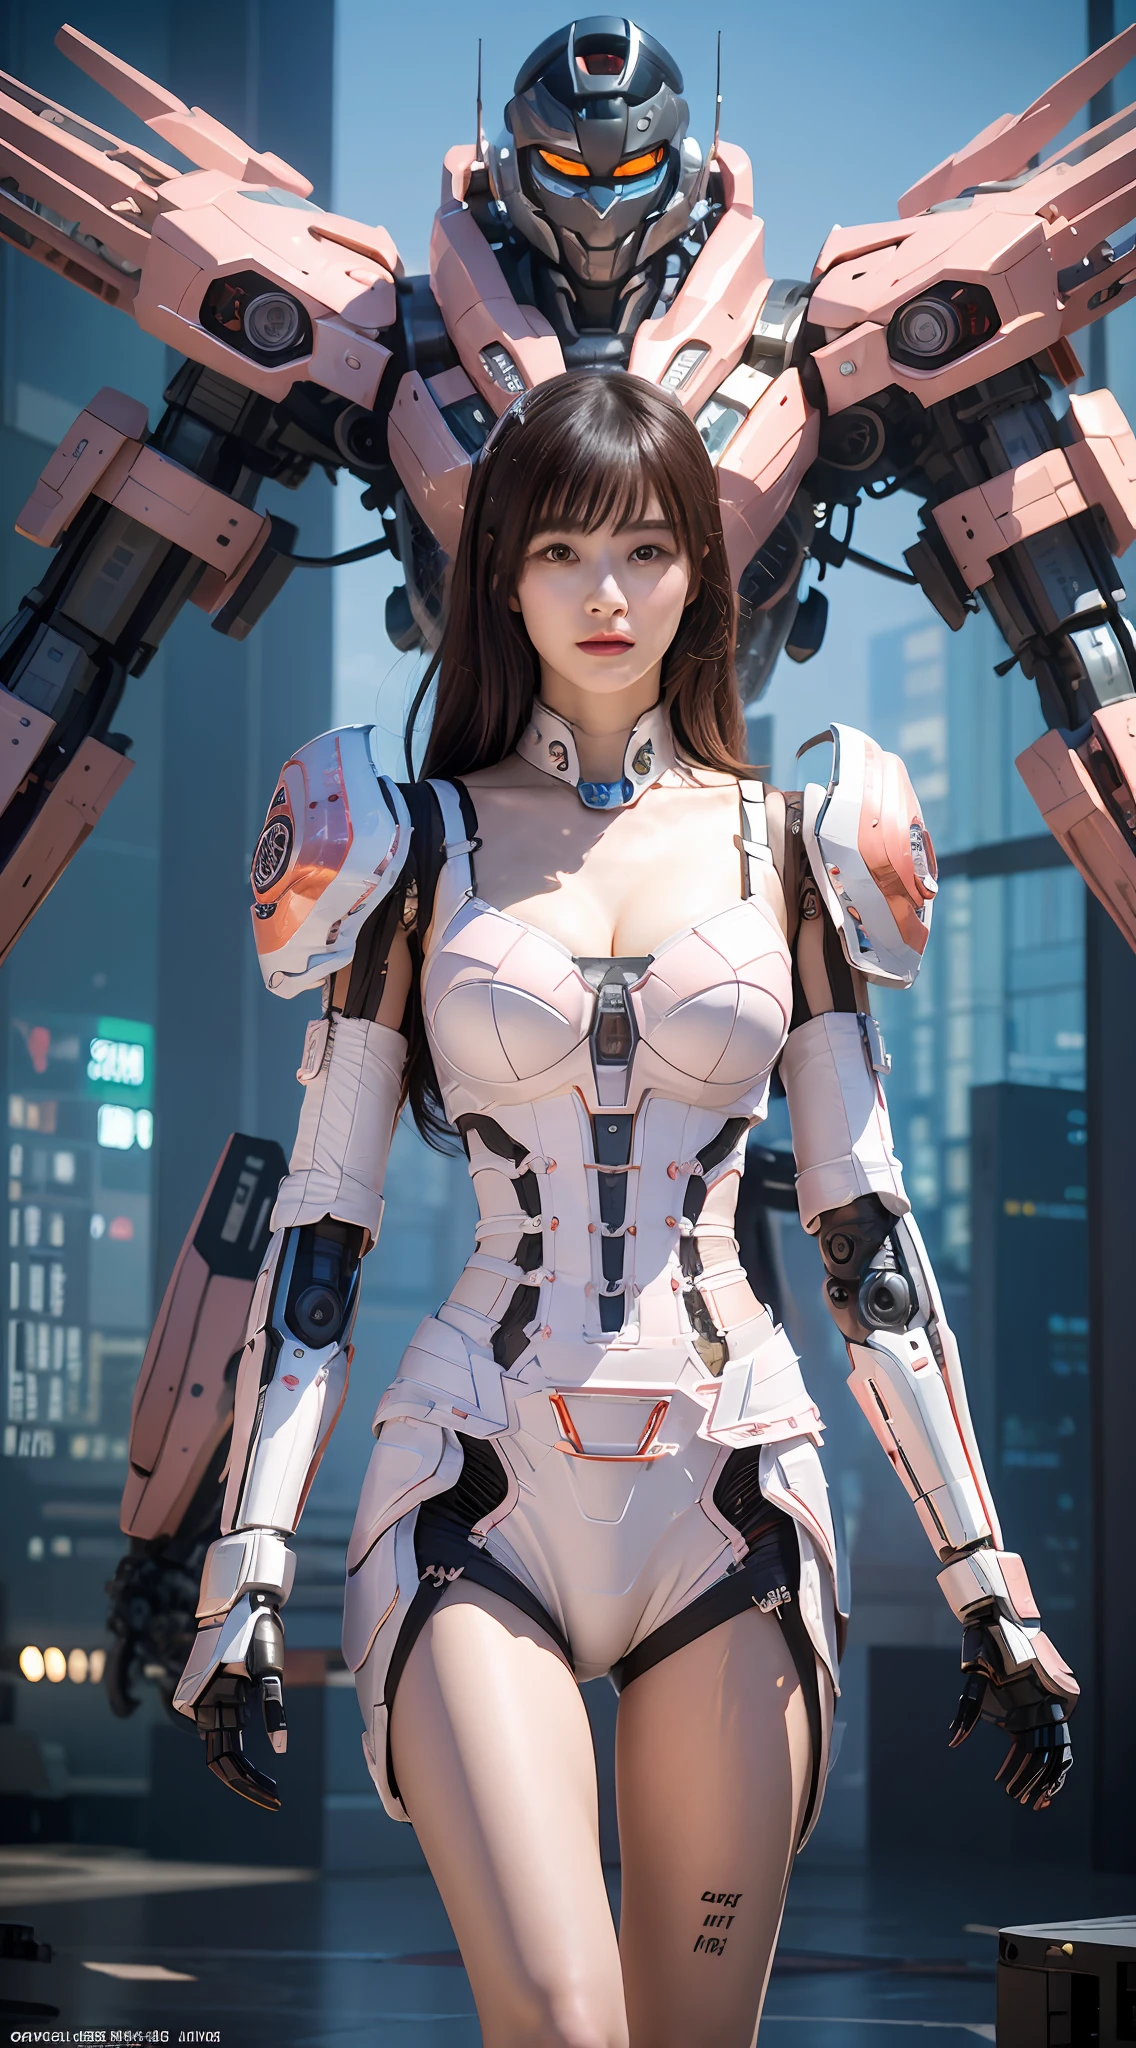 Complex 3d rendering 非常に詳細 beautiful ceramic silhouette female ロボット face, 後ろには巨大な桜ピンクのメカ戦士が立っている, ロボット parts, 150mm, 未来の戦場, エッジライト, 鮮やかなディテール, 豪華なサイバーパンク, レース, surリアリズム, 解剖学, 顔の筋肉, ケーブルワイヤー, マイクロチップ, エレガント, 美しい背景, オクタンレンダリング, HRギーガースタイル, 8k, 最高品質, 傑作, 図, とても洗練されていて美しい, 非常に詳細, CG, 統一された, 壁紙, (リアリズム, 忠実さ: 1.37), すばらしい, 細かいディテール, 傑作, 最高品質, 公式アート, 非常に詳細 CG 統一された 8k 壁紙, ロボット, 全身, 全体的な絵画スタイルは非常に支配的である,